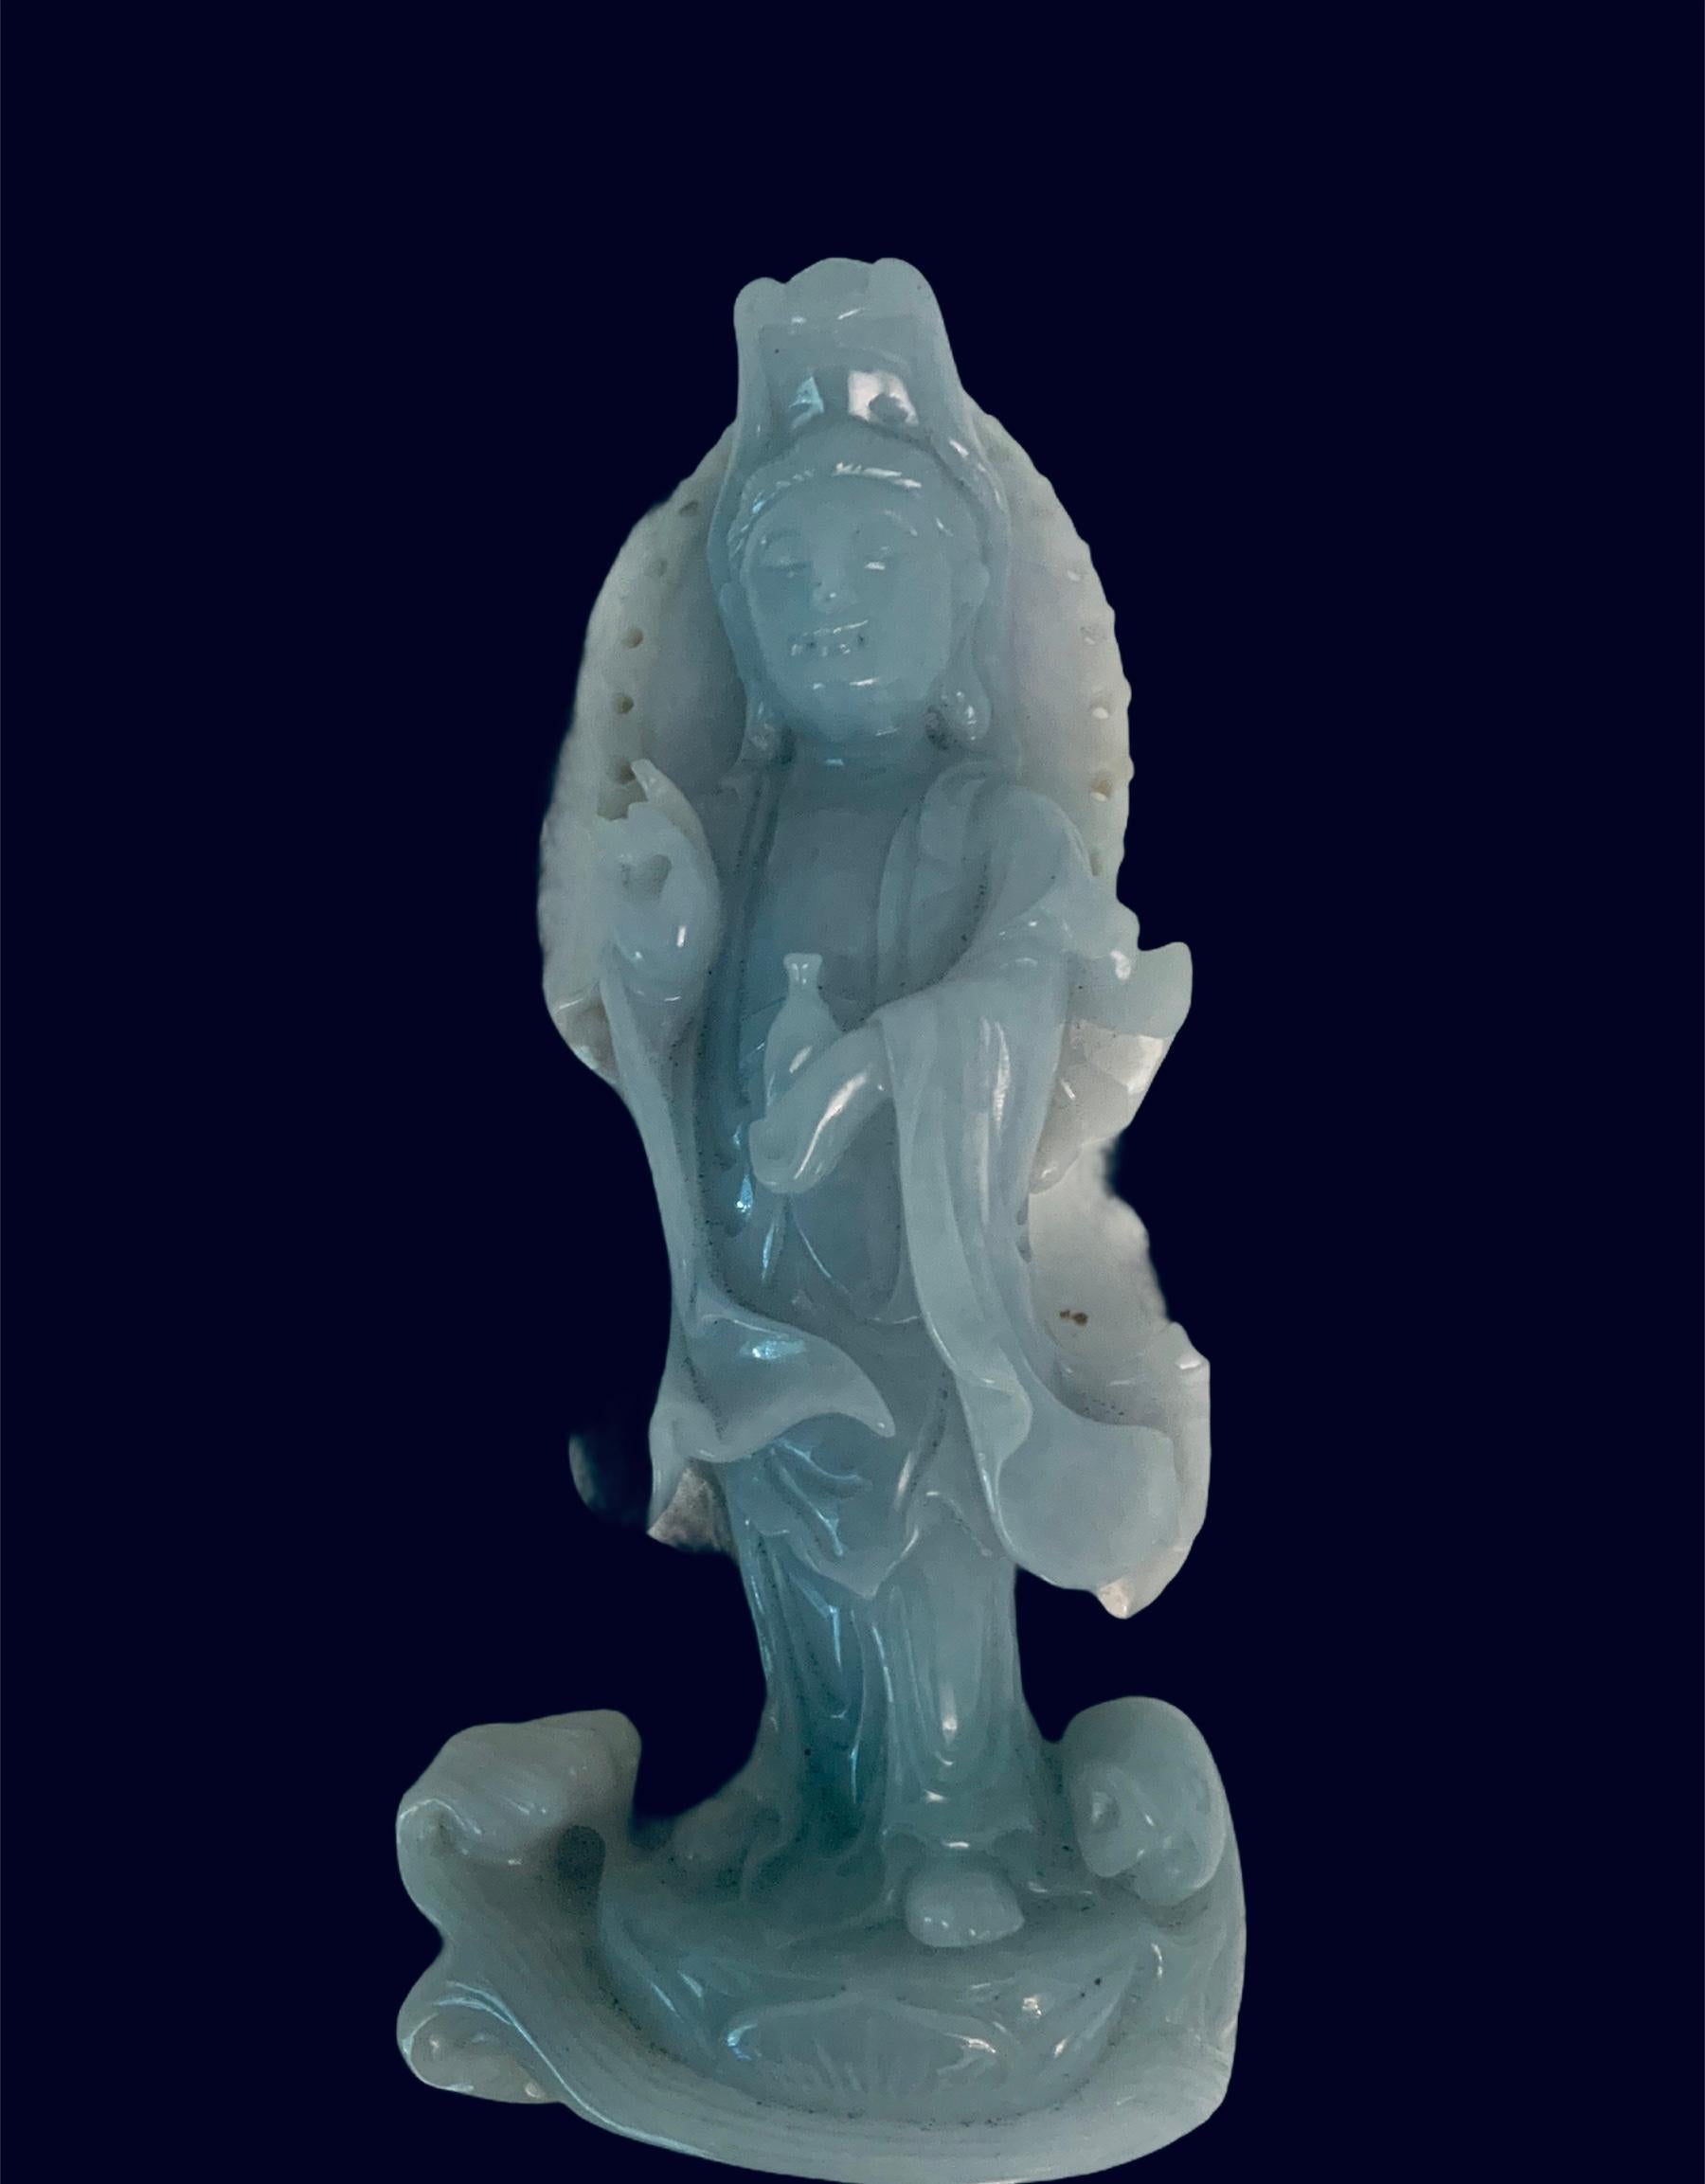 Il s'agit d'une petite sculpture en jade lavande 